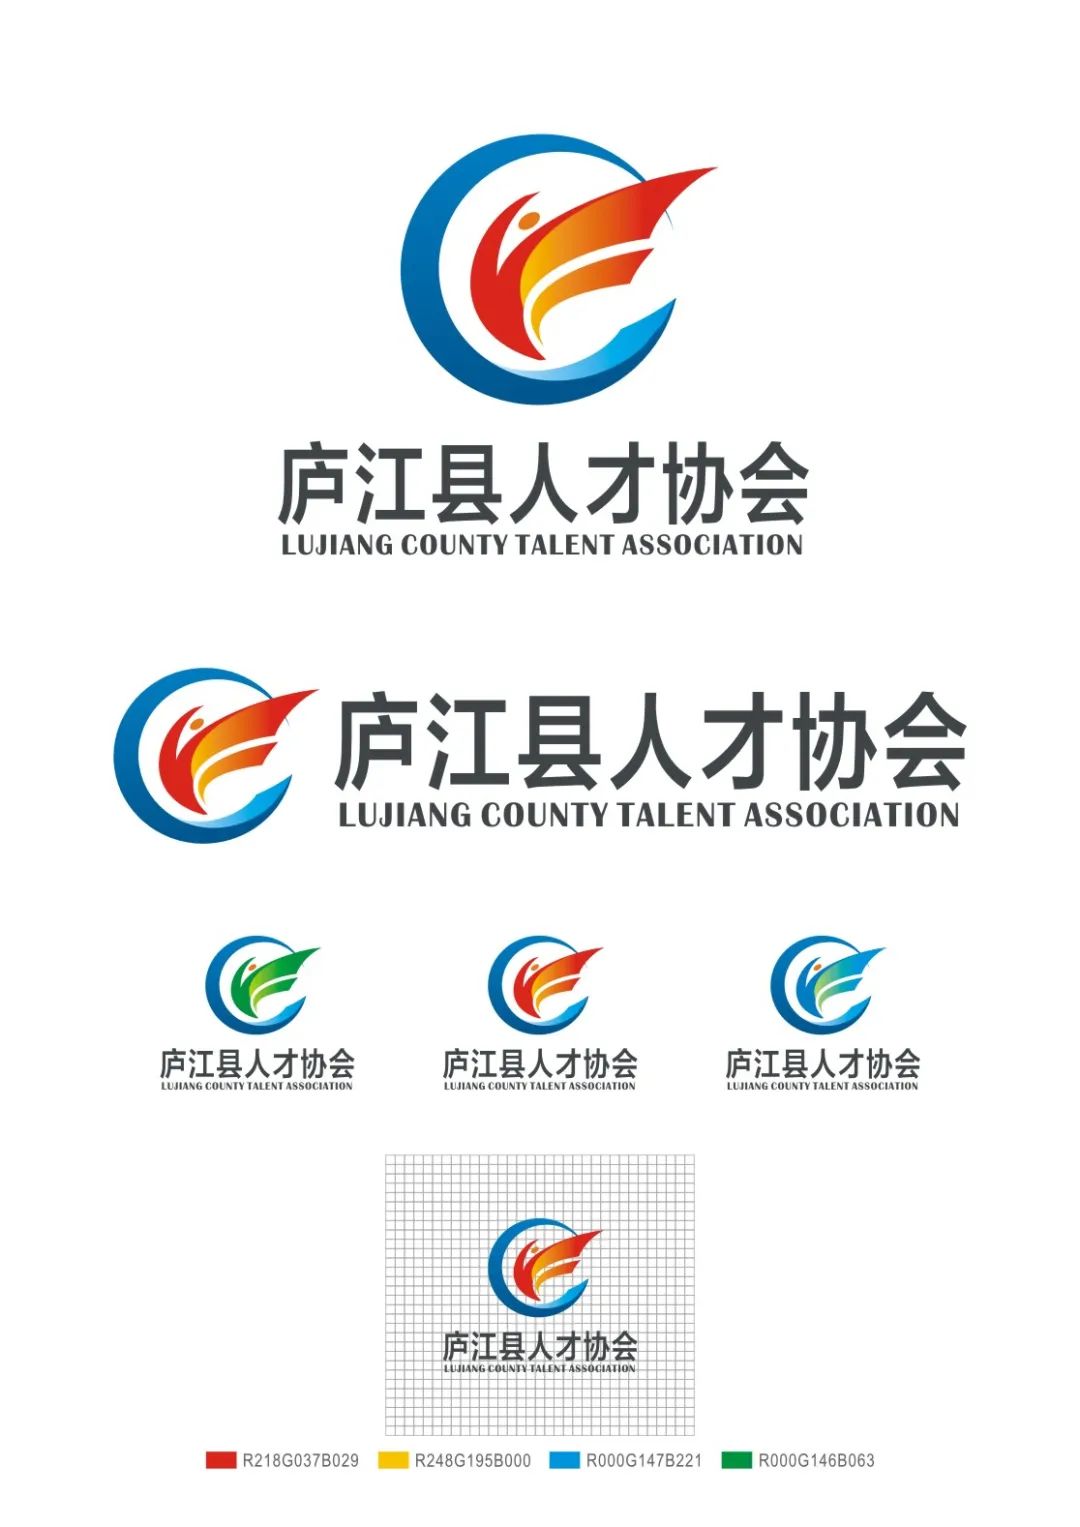 庐江县人才协会会徽logo标识征集活动评审结果揭晓